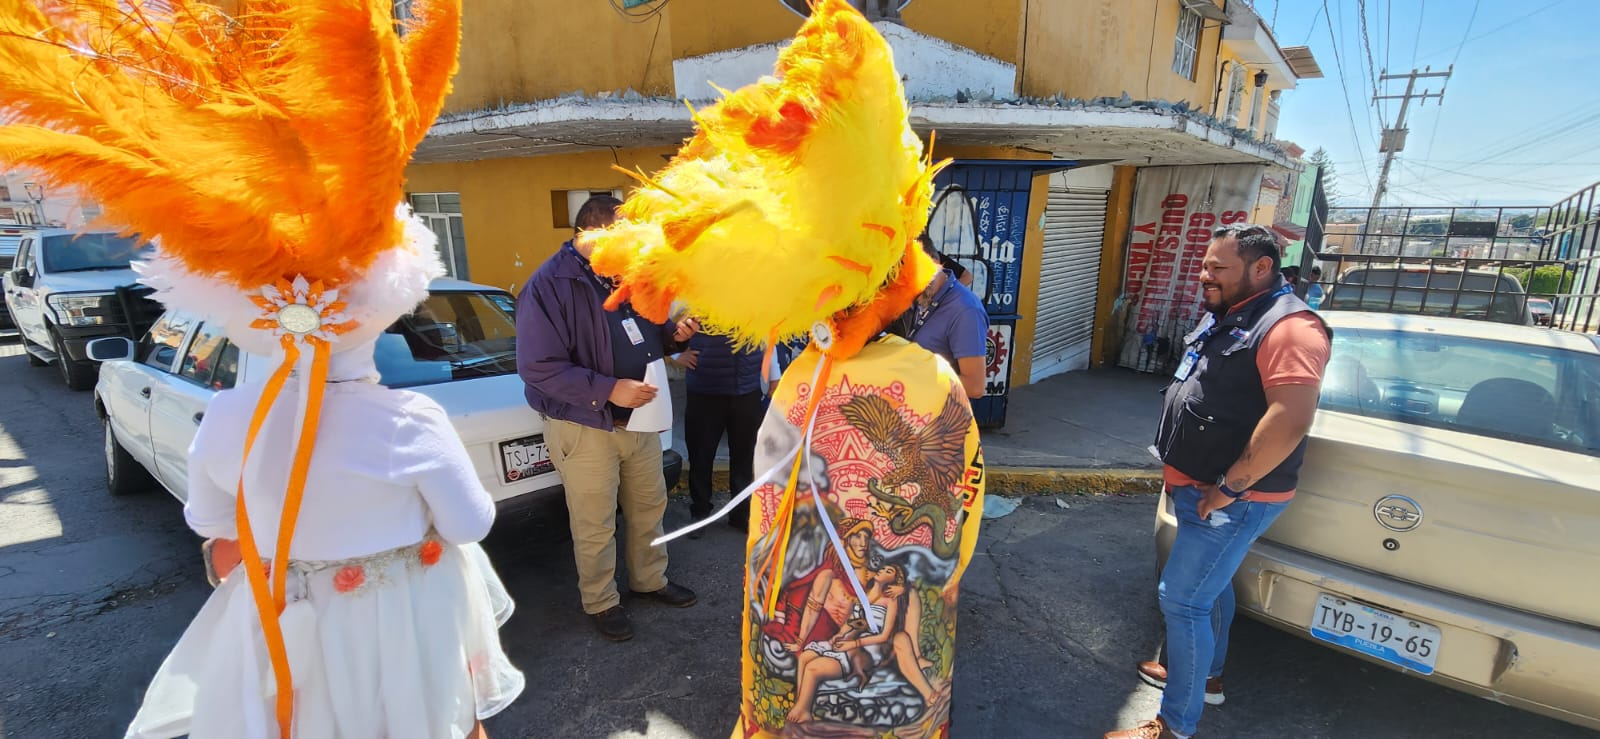 Saldo blanco en carnavales de Puebla capital, reporta el ayuntamiento